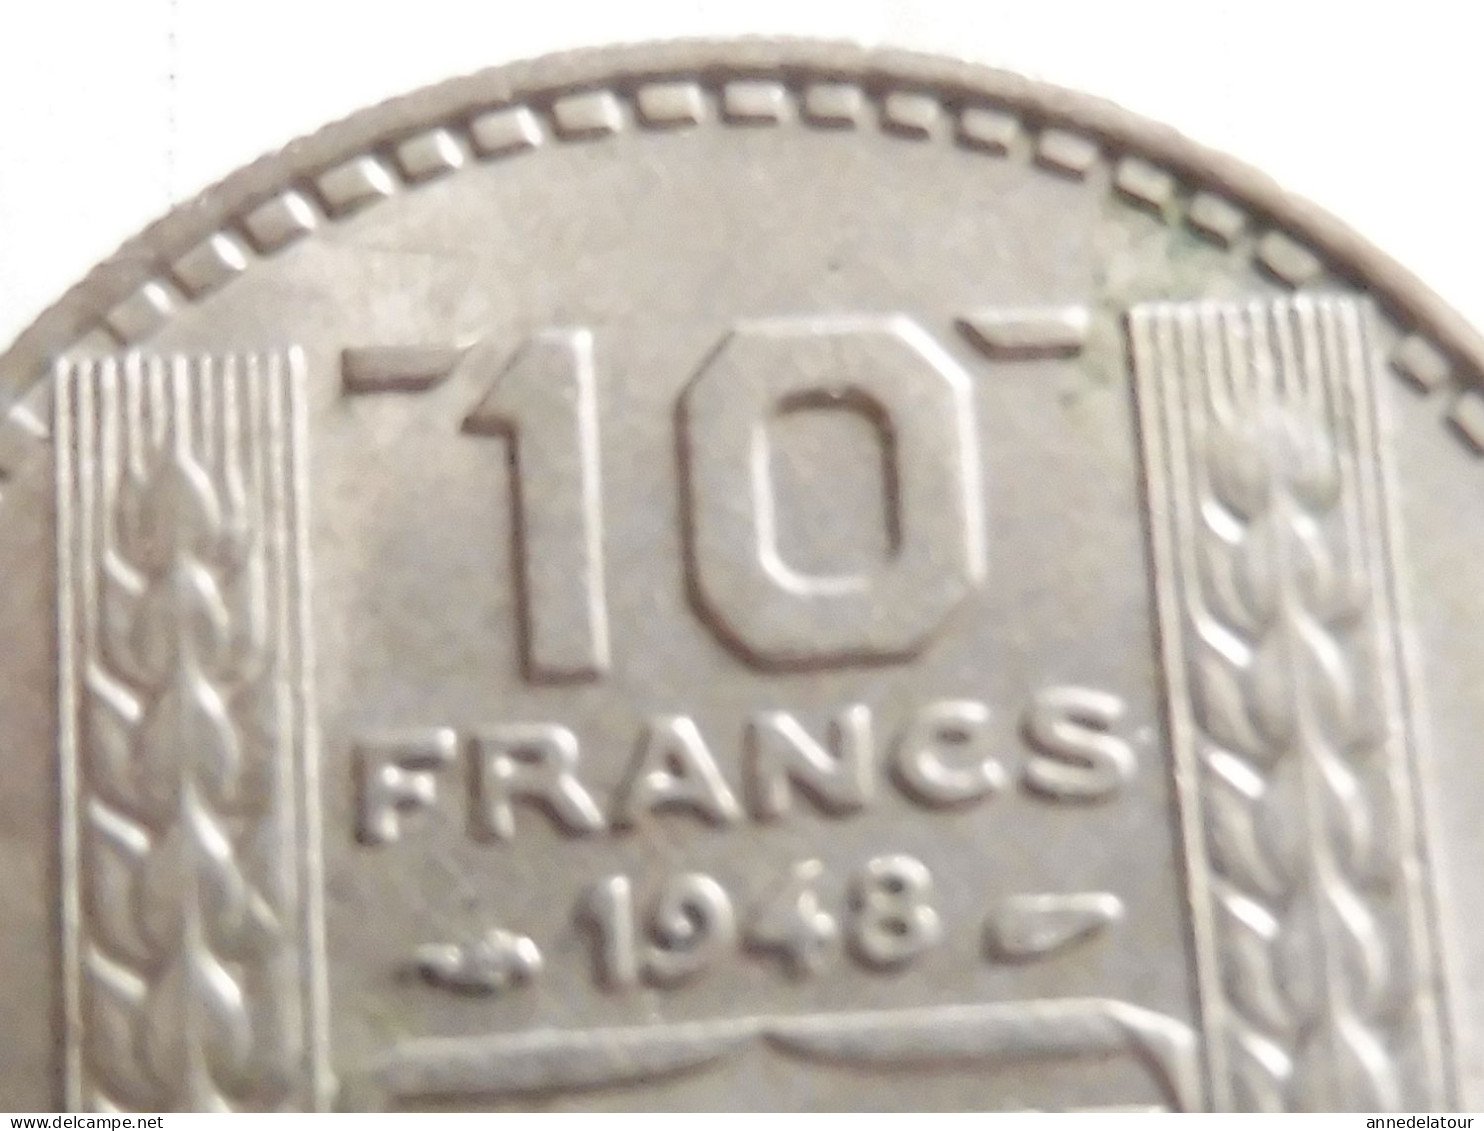 Année 1948  "B"  pièce  de  10 francs   (Turin ) (République Française)   en alliage nickel